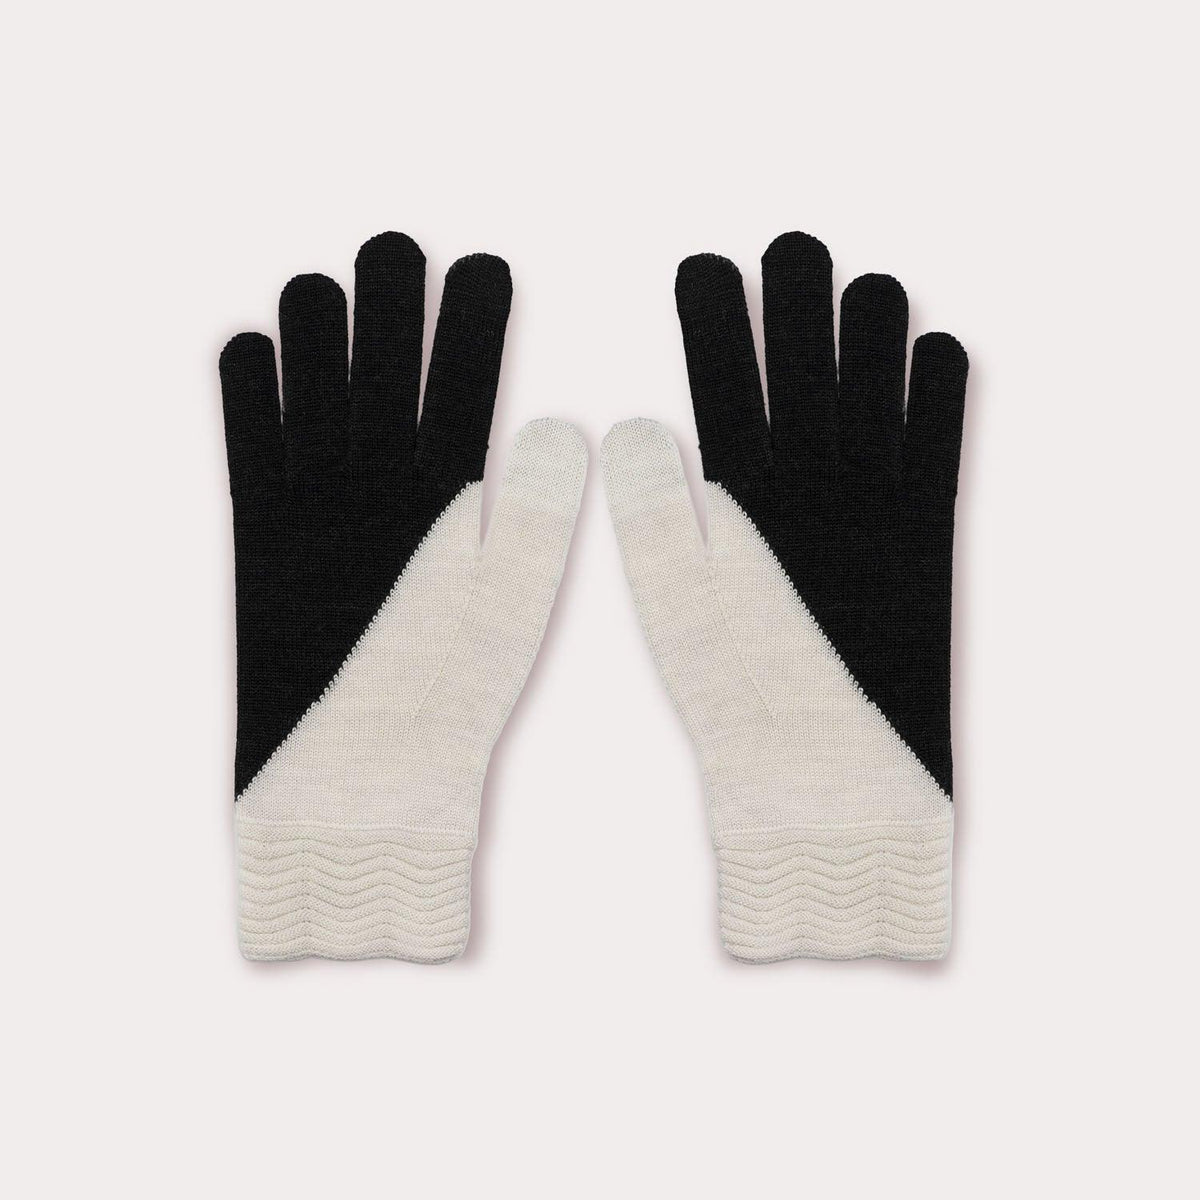 Tech Gallery Wool Gloves by Seymoure Gloves.